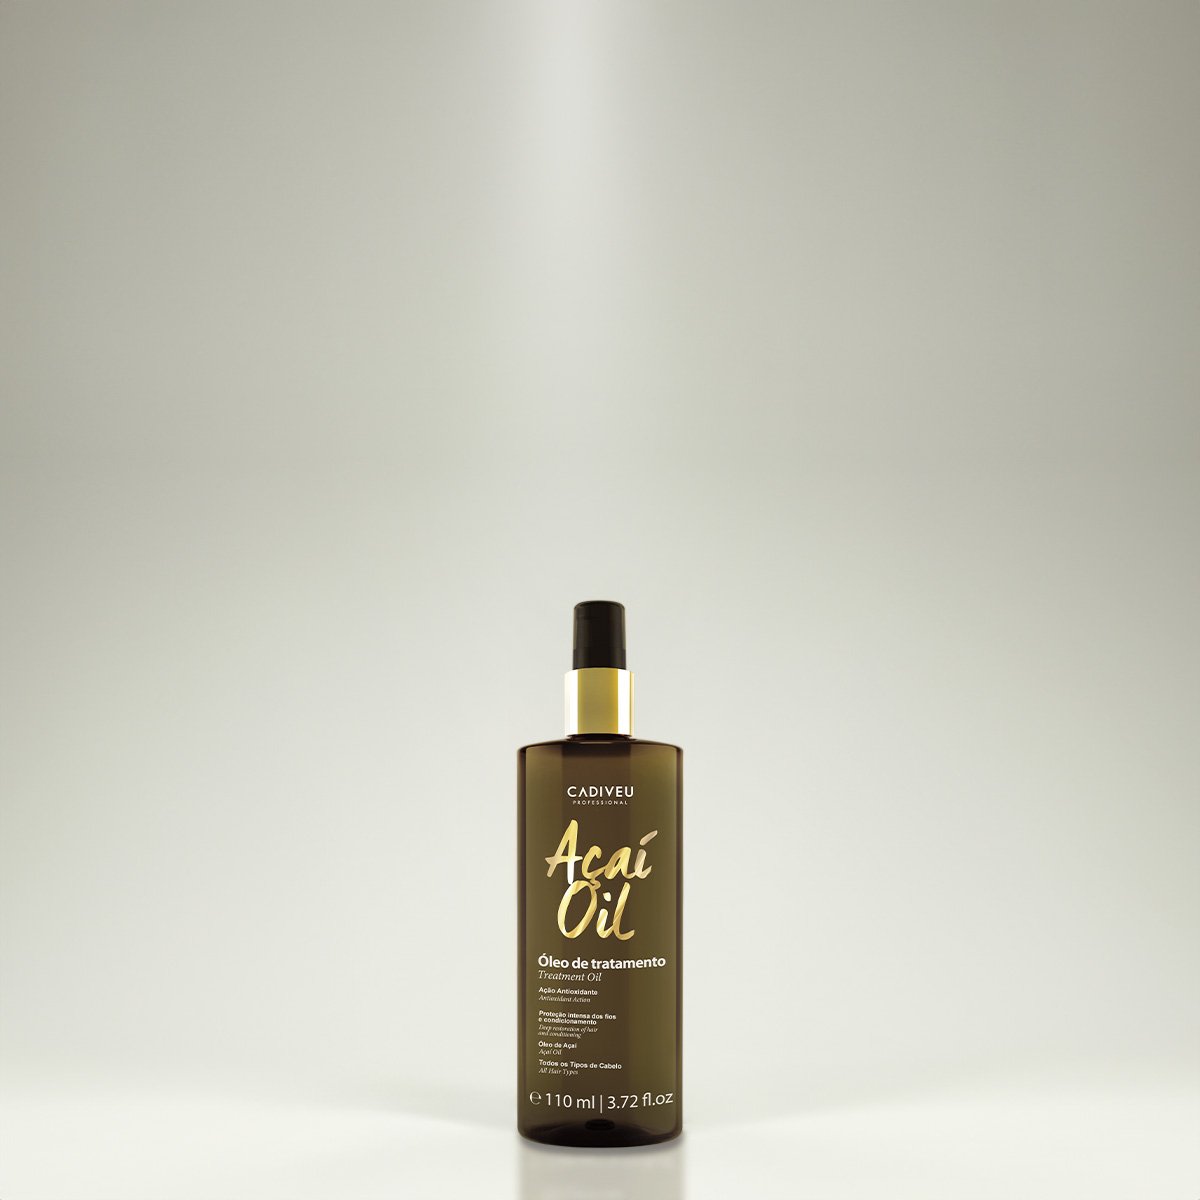 Kit Cadiveu Professional Essentials Quartzo Shine Shampoo Mascara Pre-Shampoo e Acai Oil 110 (4 produtos) ÚNICO 5